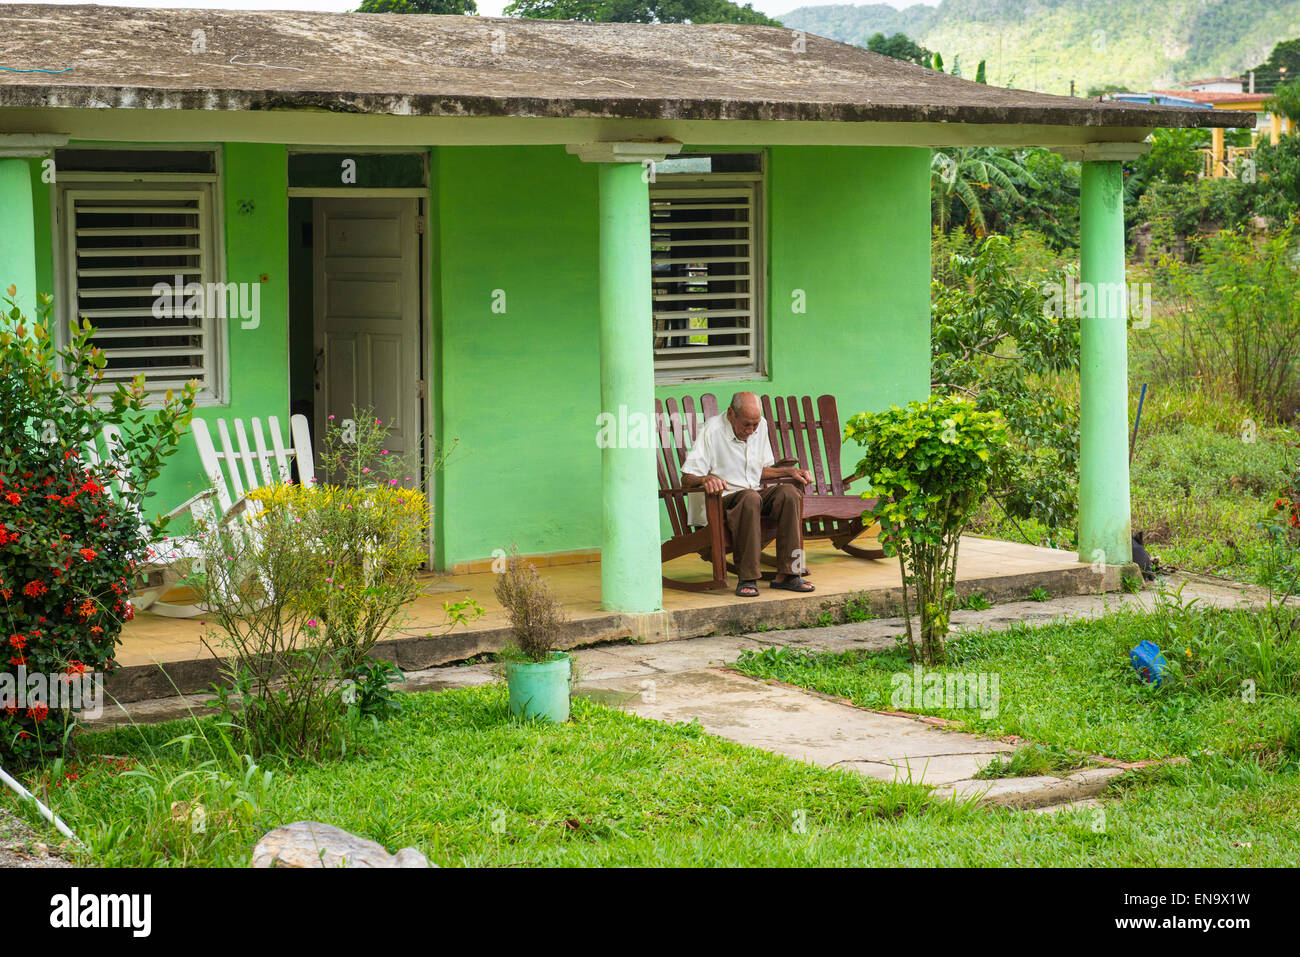 Vinales Cuba vieil homme sur une chaise berçante maison verte portique  veranda volets en bois colonial à arcades Photo Stock - Alamy